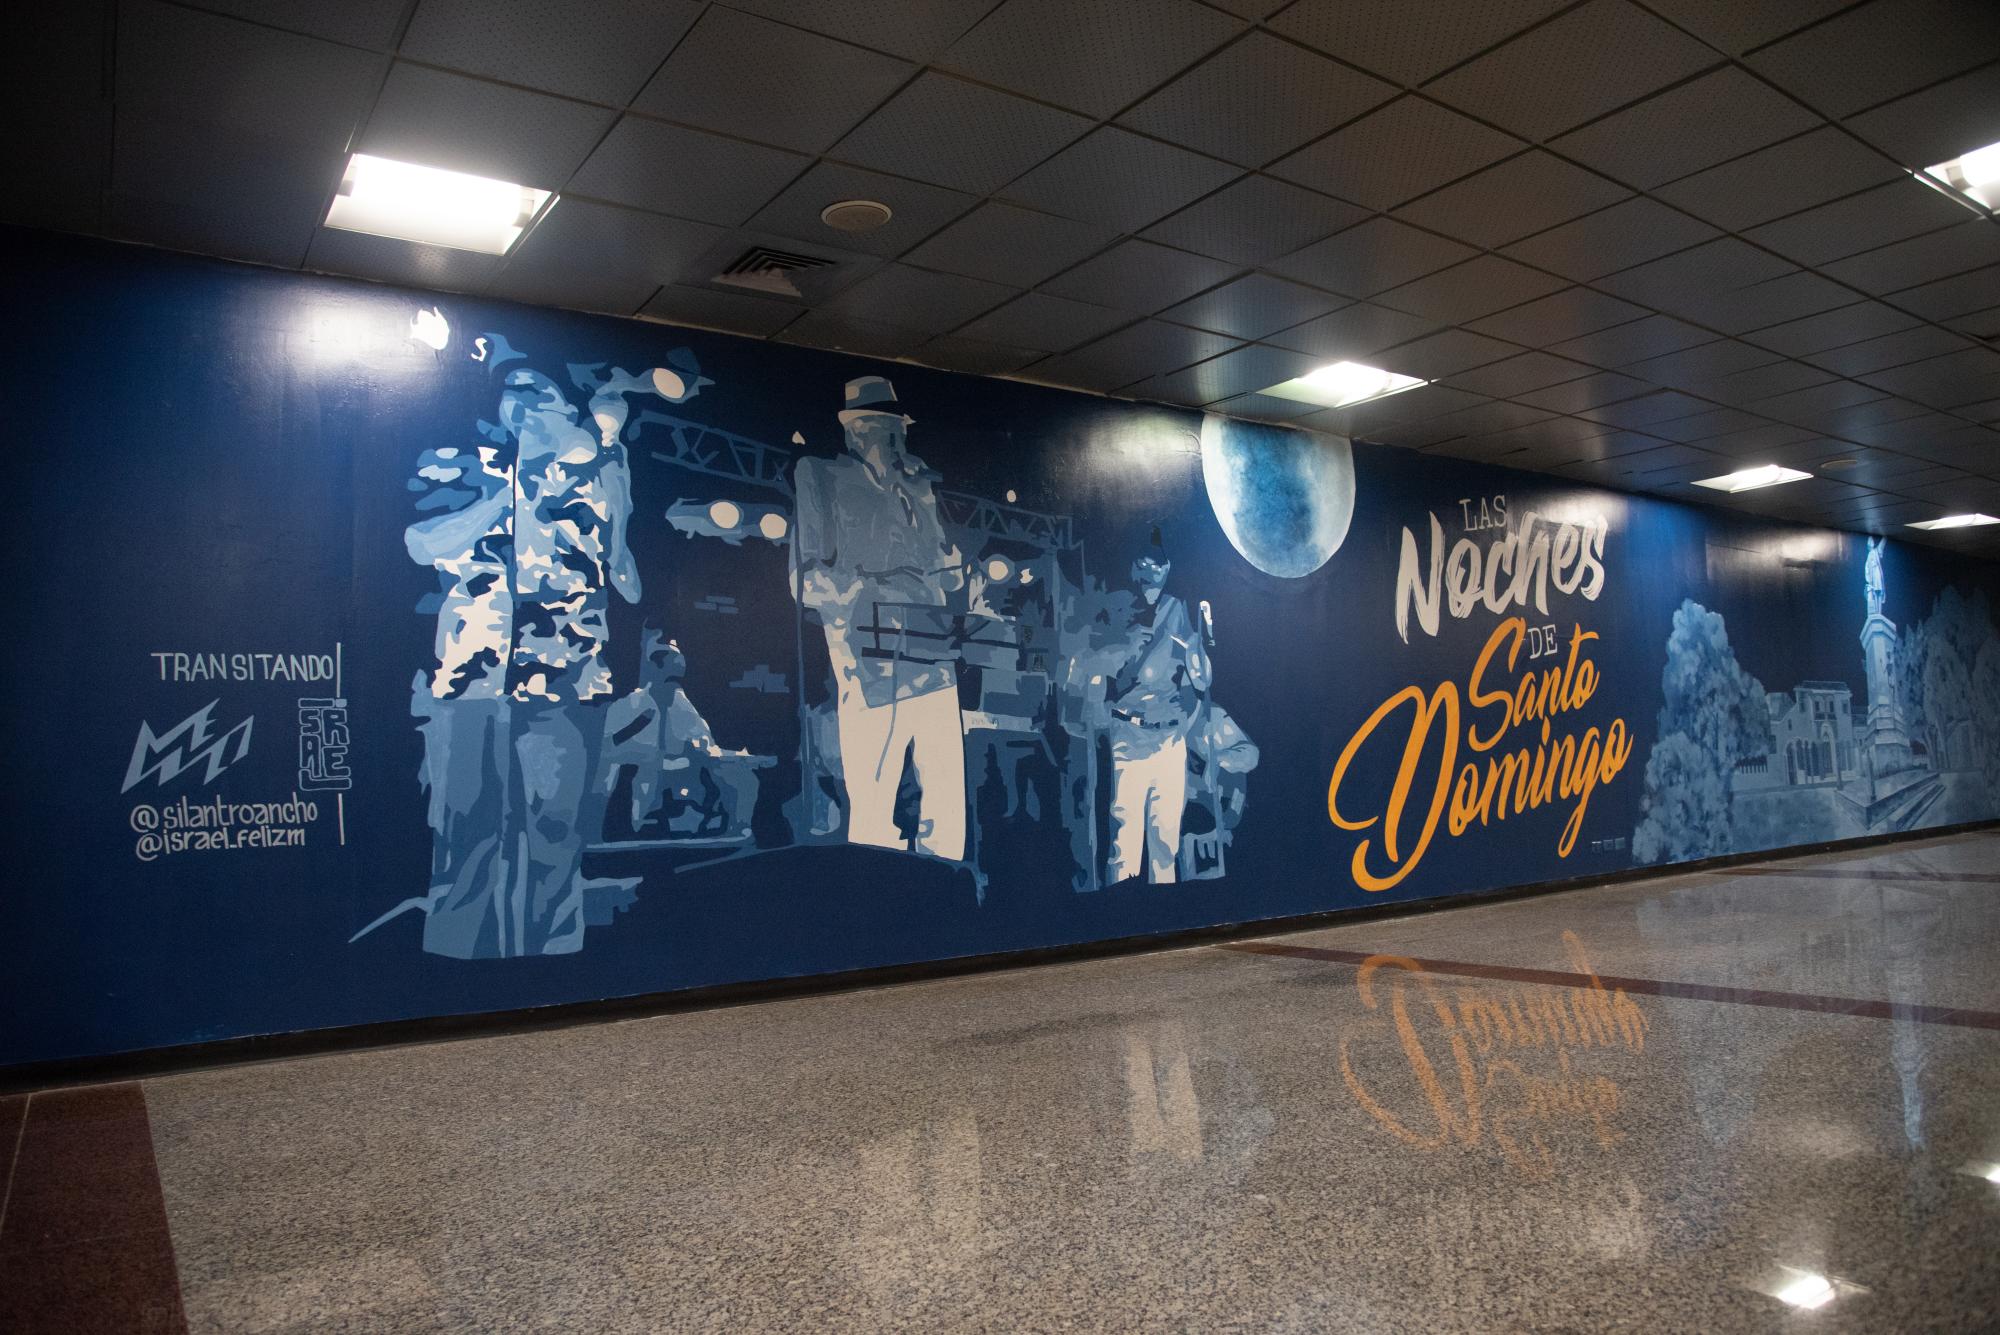 La noche de Santo Domingo también tiene su retrato en los murales que adornan las paredes del Aeropuerto Las Américas (Foto: Dania Acevedo / Diario Libre)